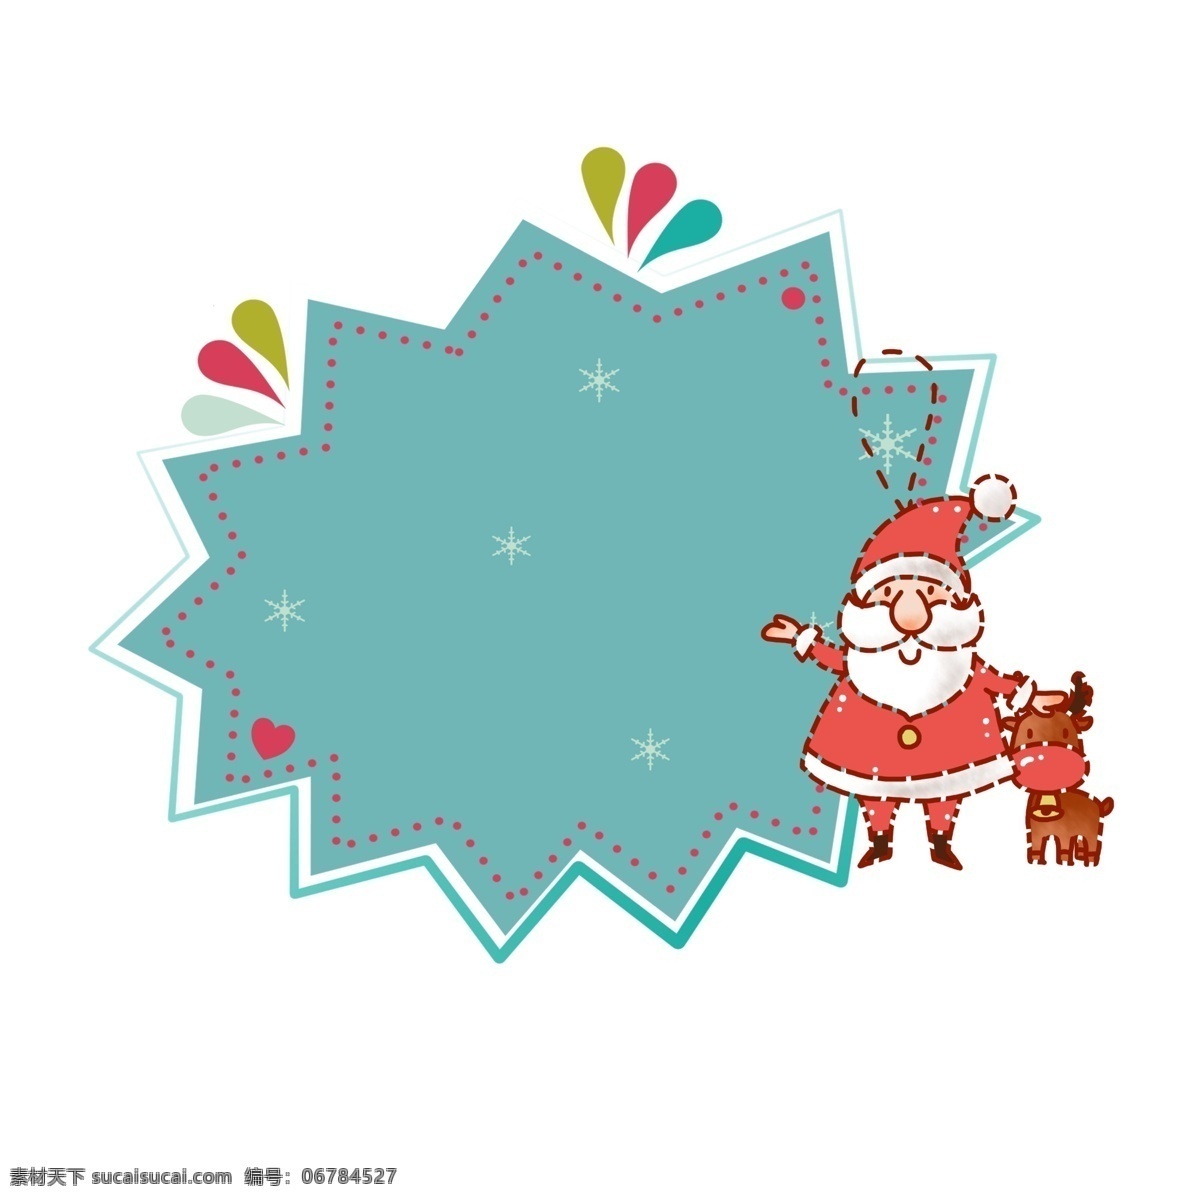 圣诞节 手绘 卡通 挂牌 圣诞老人 麋鹿 圣诞礼物 圣诞边框 圣诞老公公 简单 简约 简约风 可爱手绘